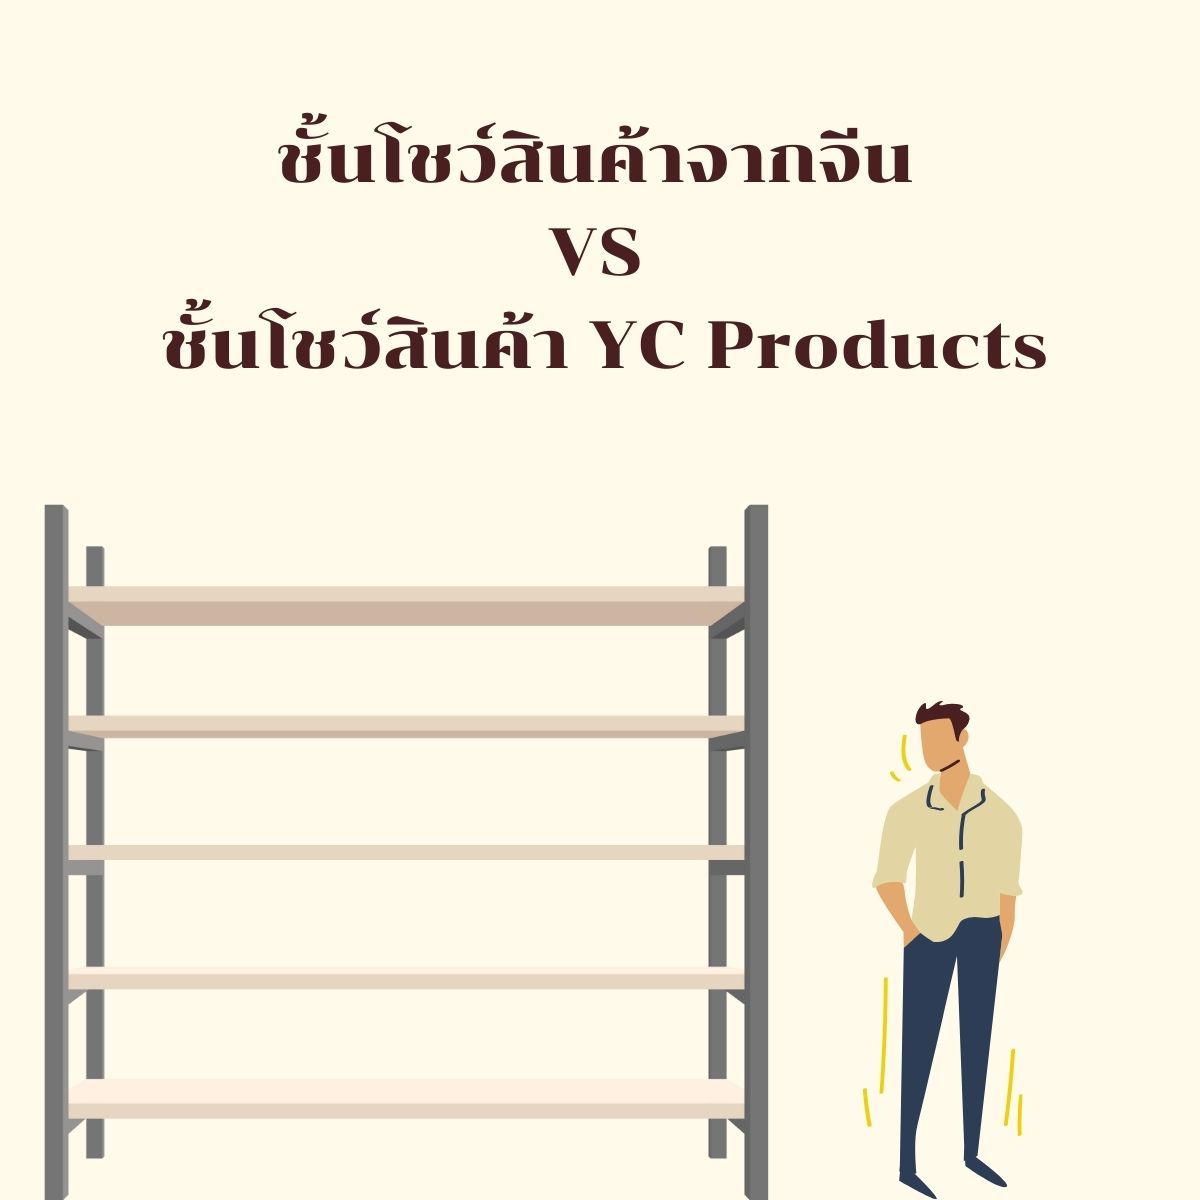 ชั้นโชว์สินค้าจากจีน VS ชั้นโชว์สินค้า YC Products